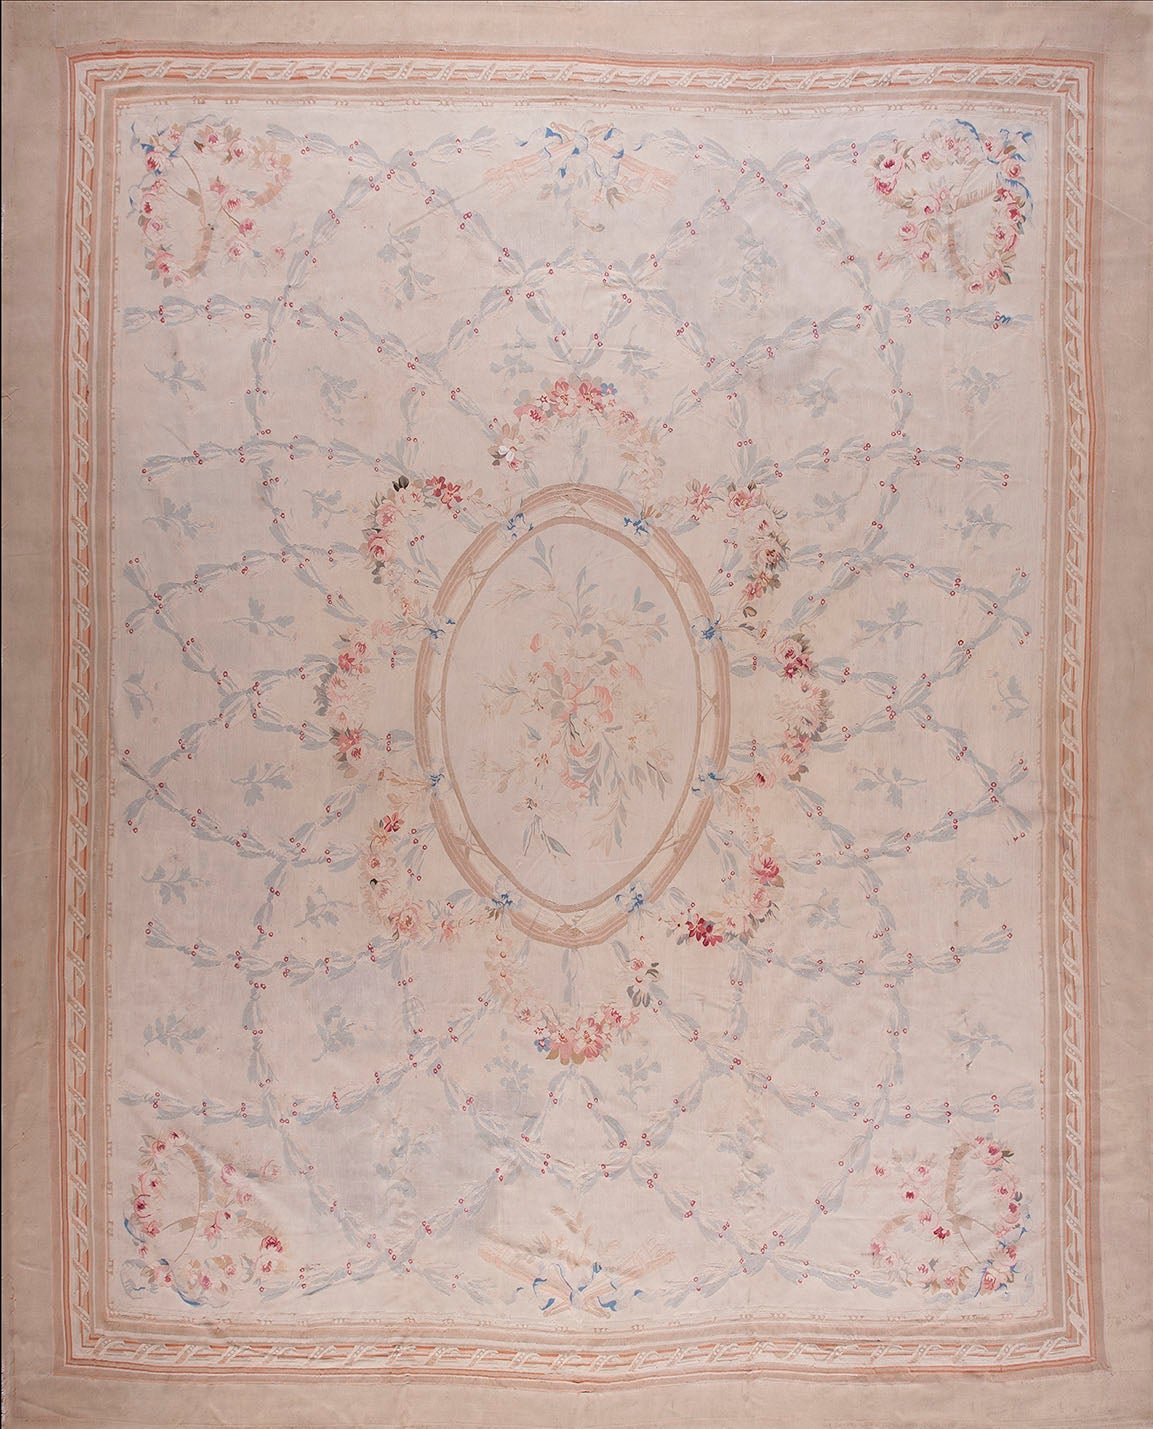 Französischer Aubusson-Teppich des späten 19. Jahrhunderts ( 11'8"" x 14'3"" - 355 x 434 cm)  